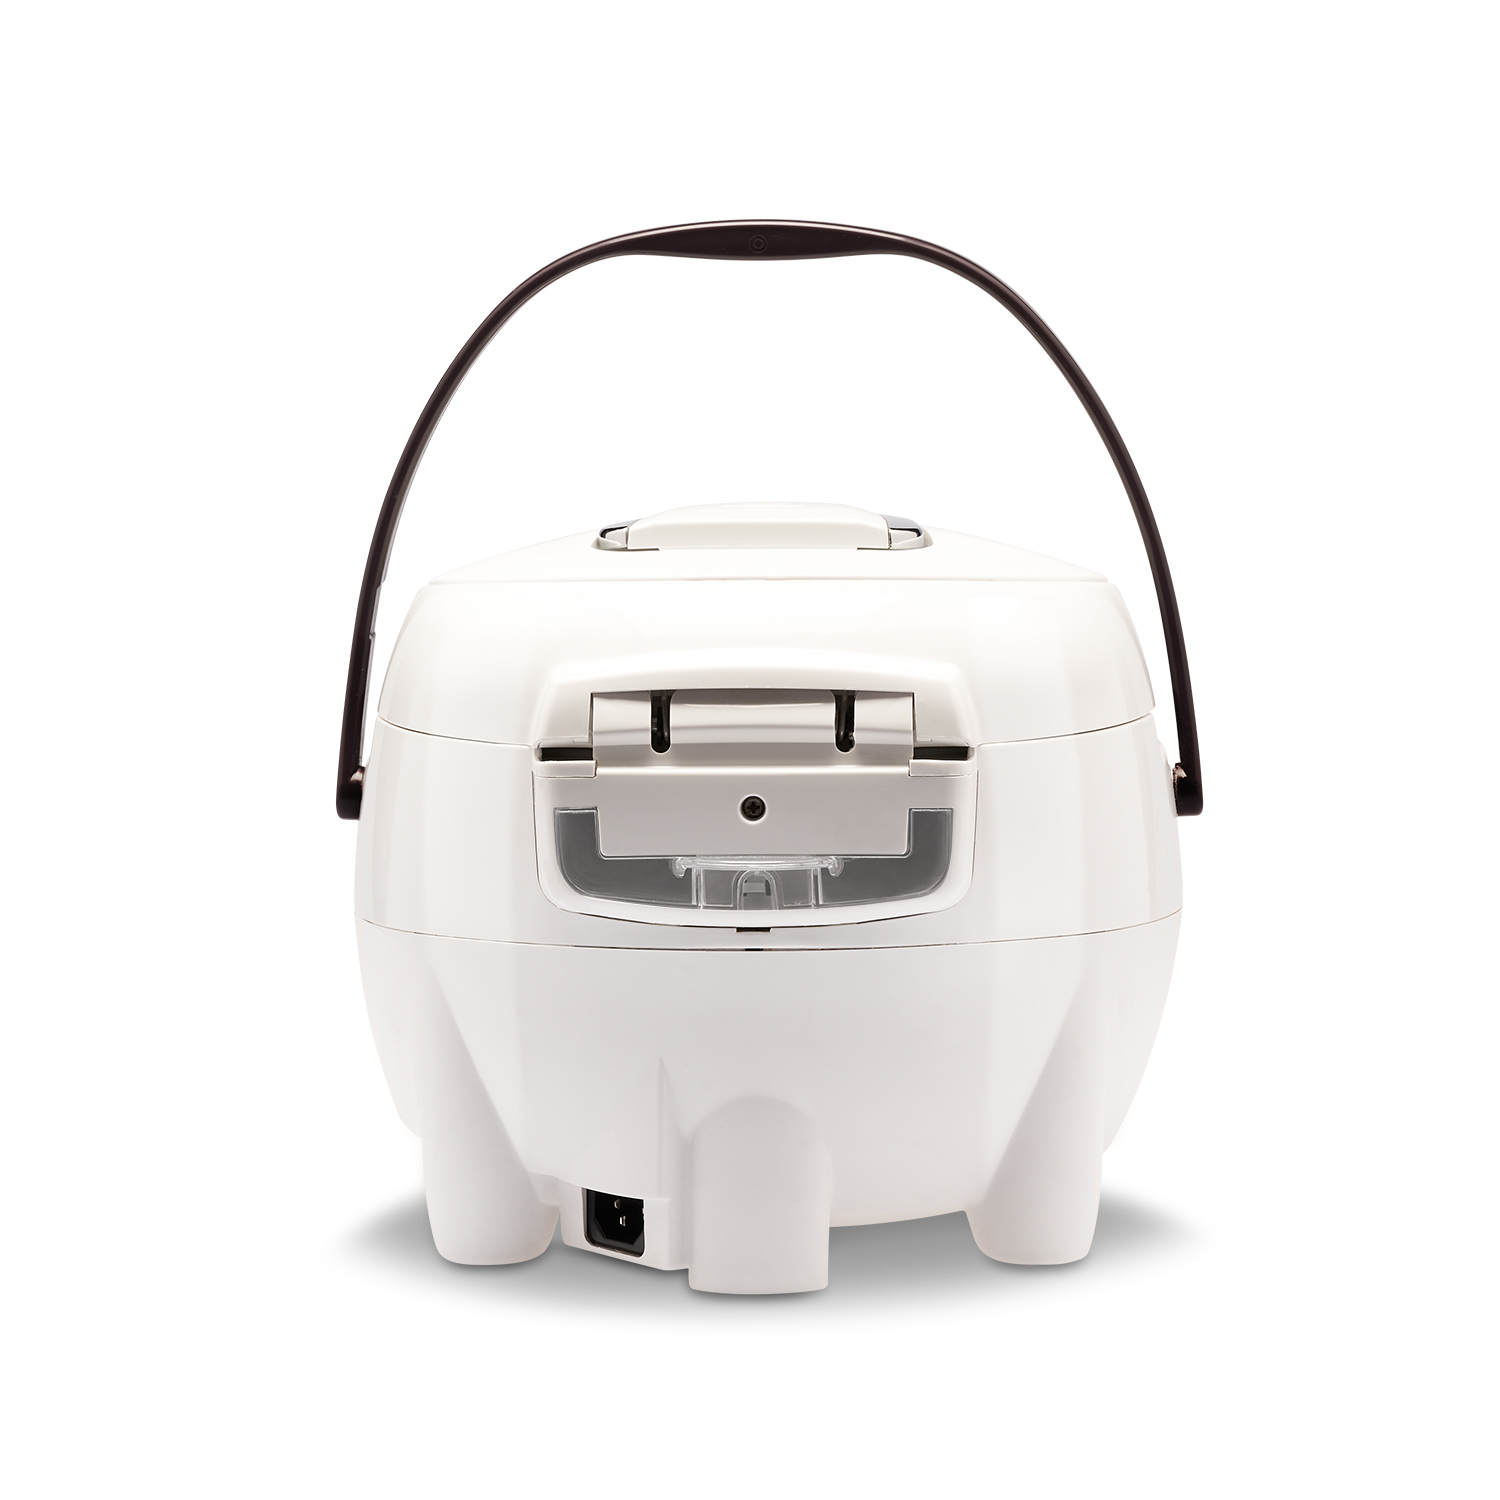 Dampfgarer Weiß) Digitaler (860 Reiskocher Watt, und Reiskocher REISHUNGER